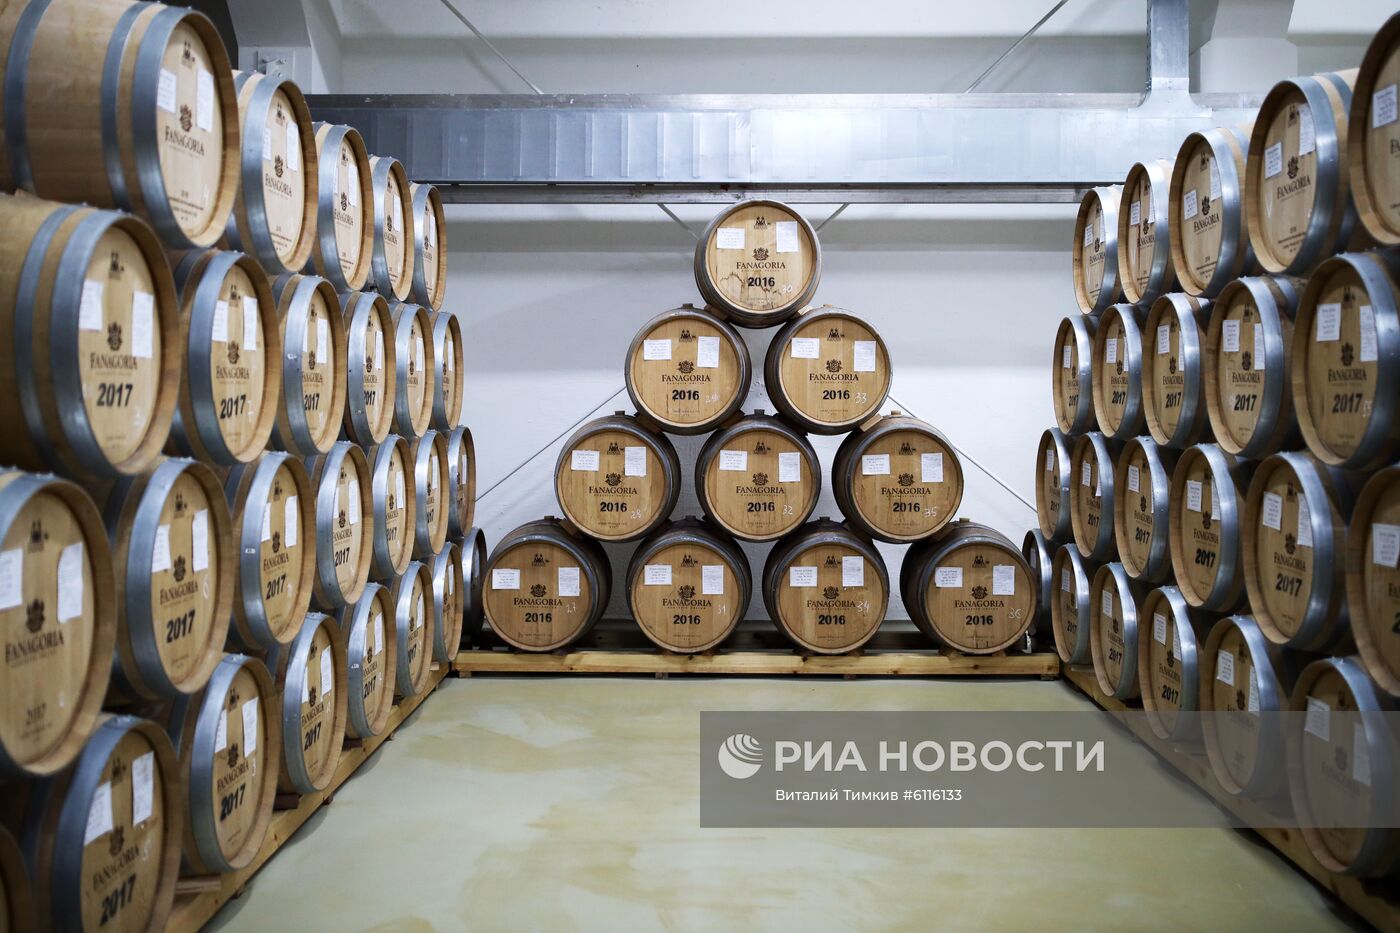 Винодельческое предприятие "Фанагория" в Краснодарском крае